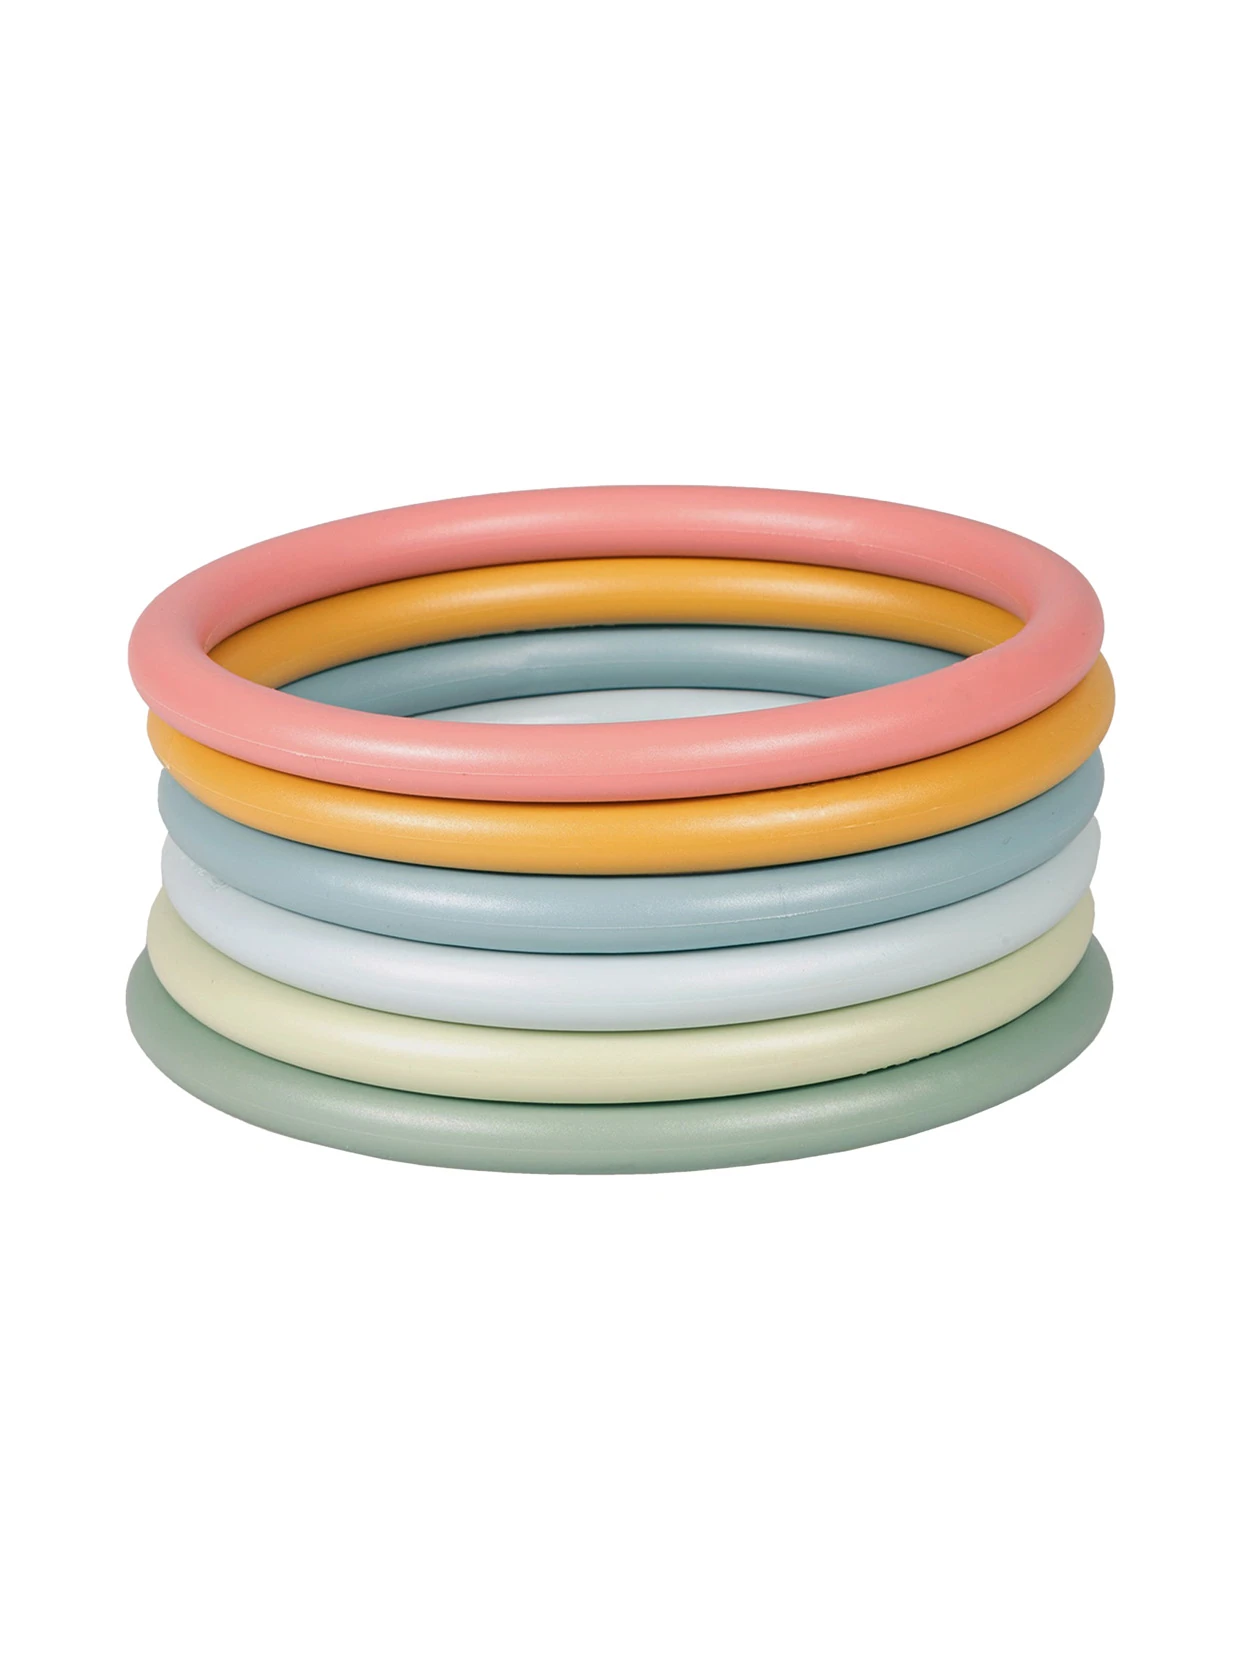 Sześć ułożonych kolorowych pierścieni (activity rings) do zabawy od marki Little Dutch.